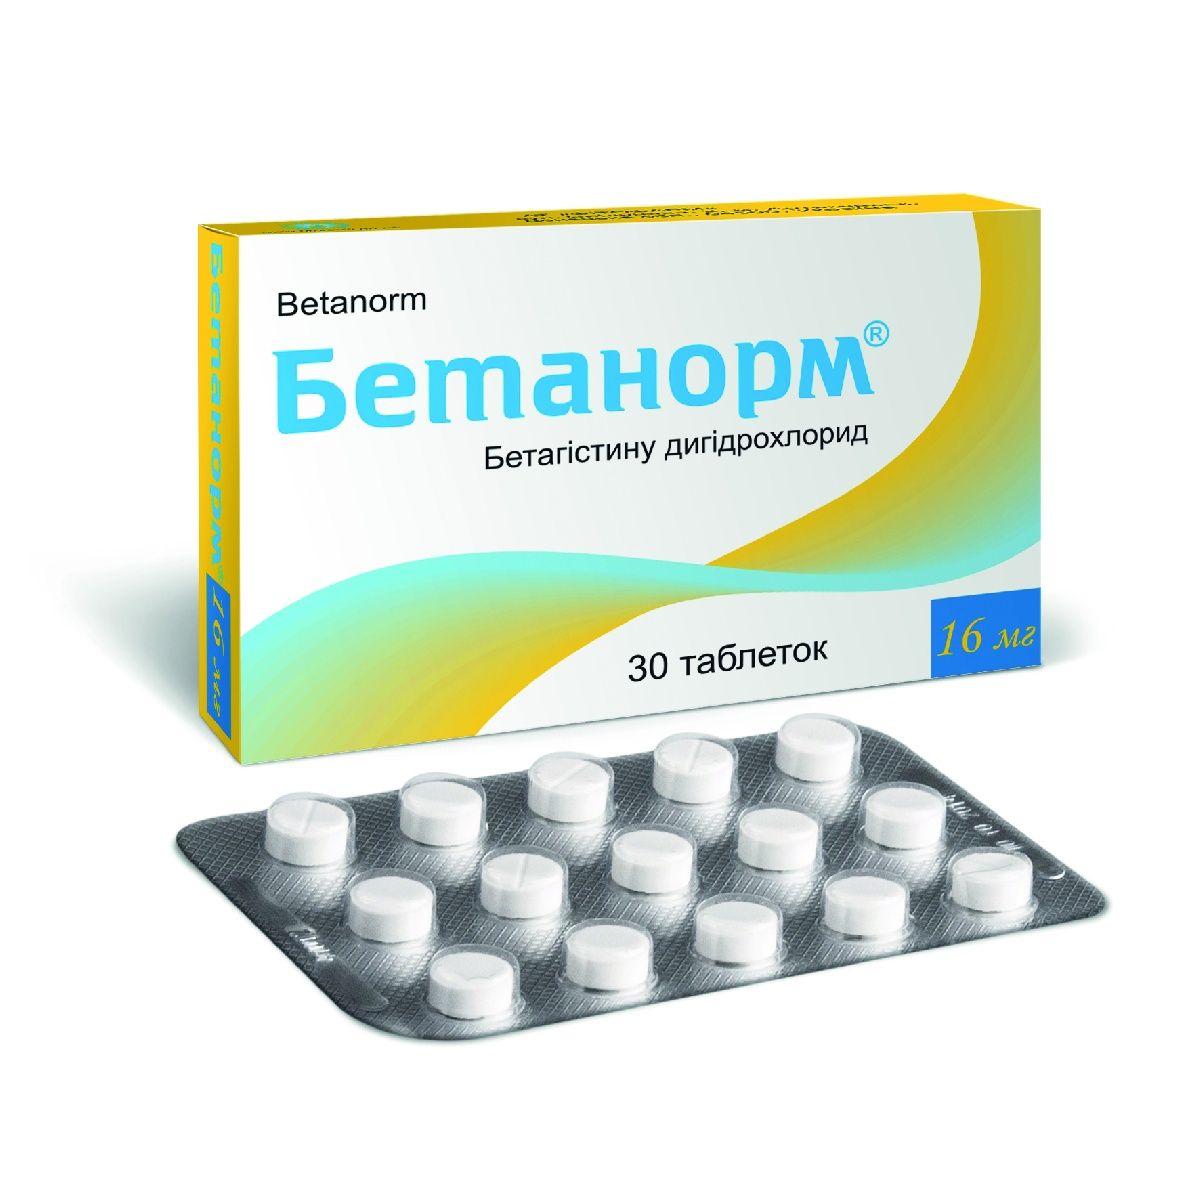 Бетанорм 16 мг №30 таблетки: інструкція, ціна, відгуки, аналоги. Купити .